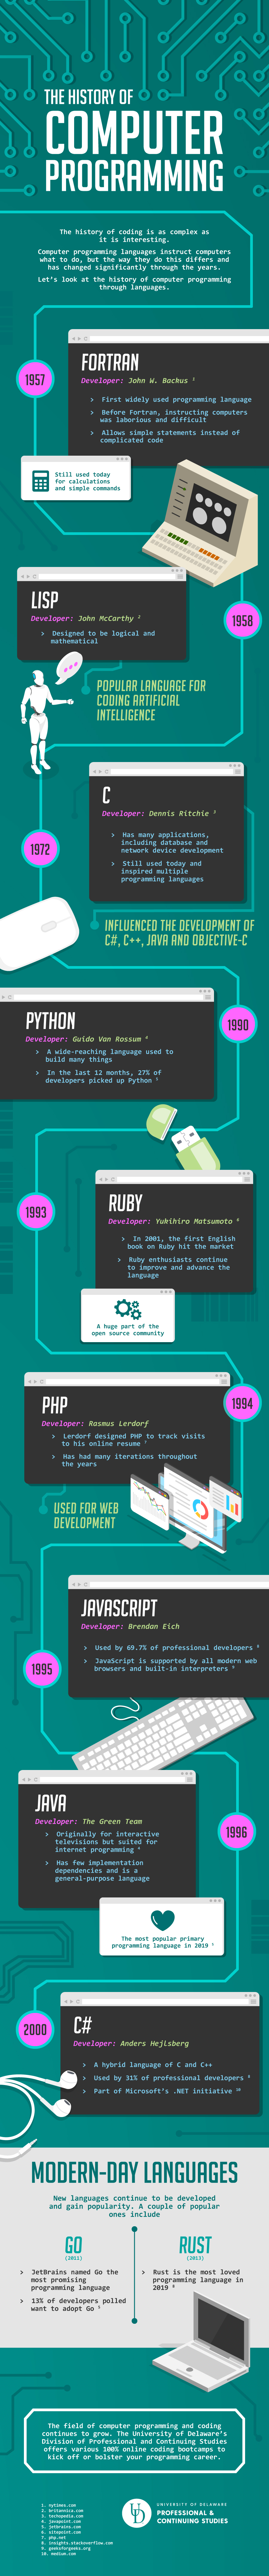  Посмотреть инфографику по истории компьютерного программирования из блога профессиональных и непрерывных исследований Университета Делавэра 